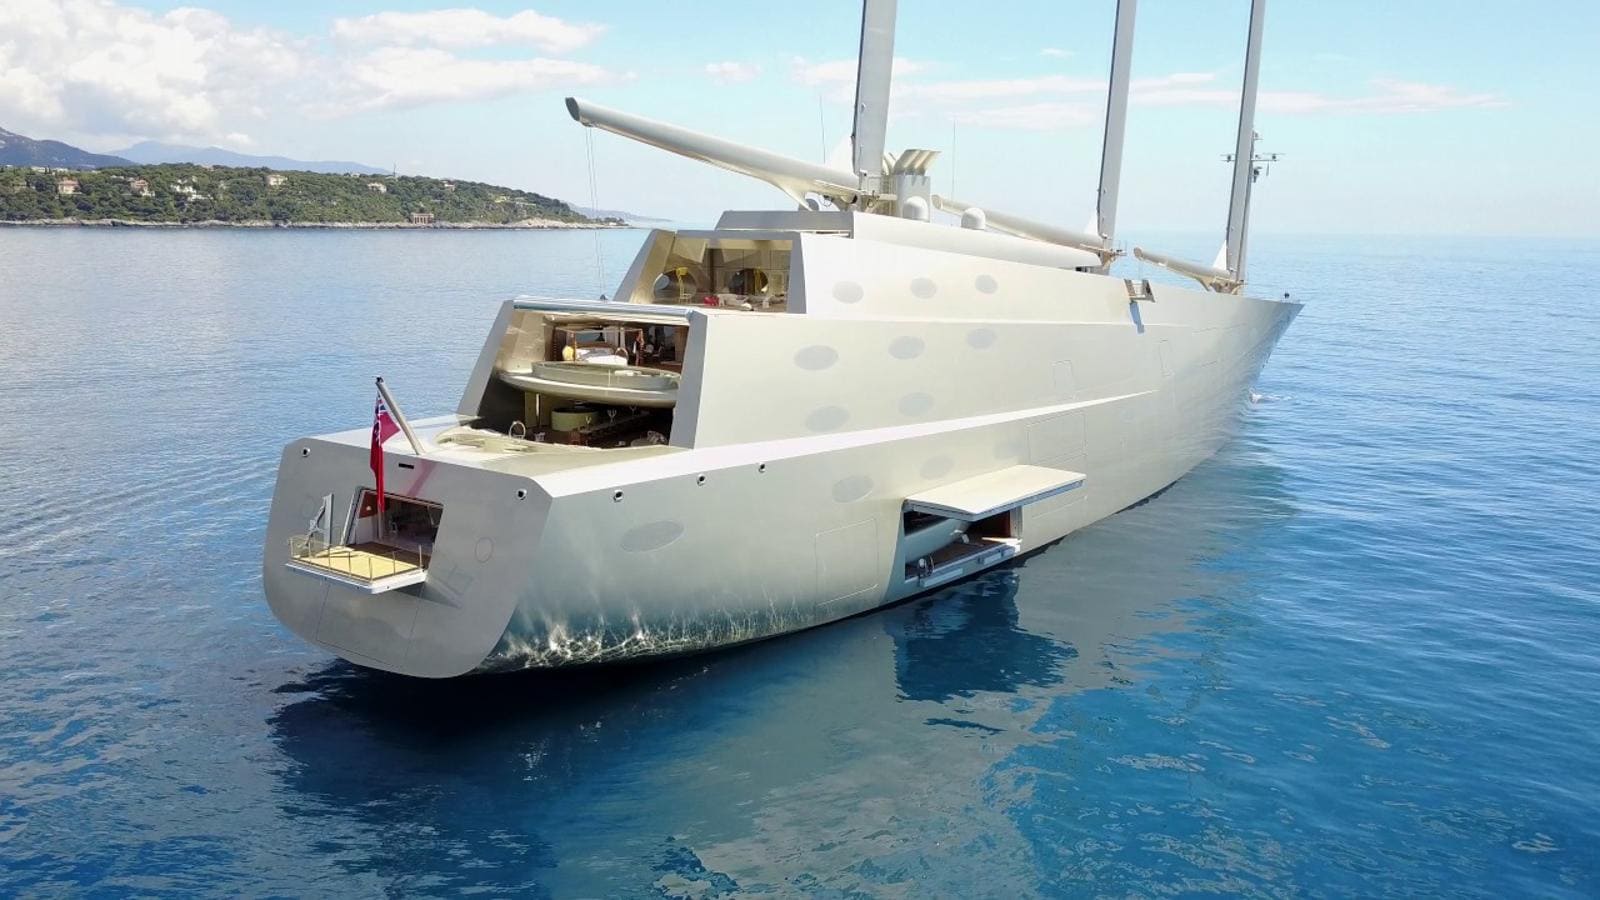 Sailing Yacht A. El precio de esta embarcación ronda los 450 millones de euros.